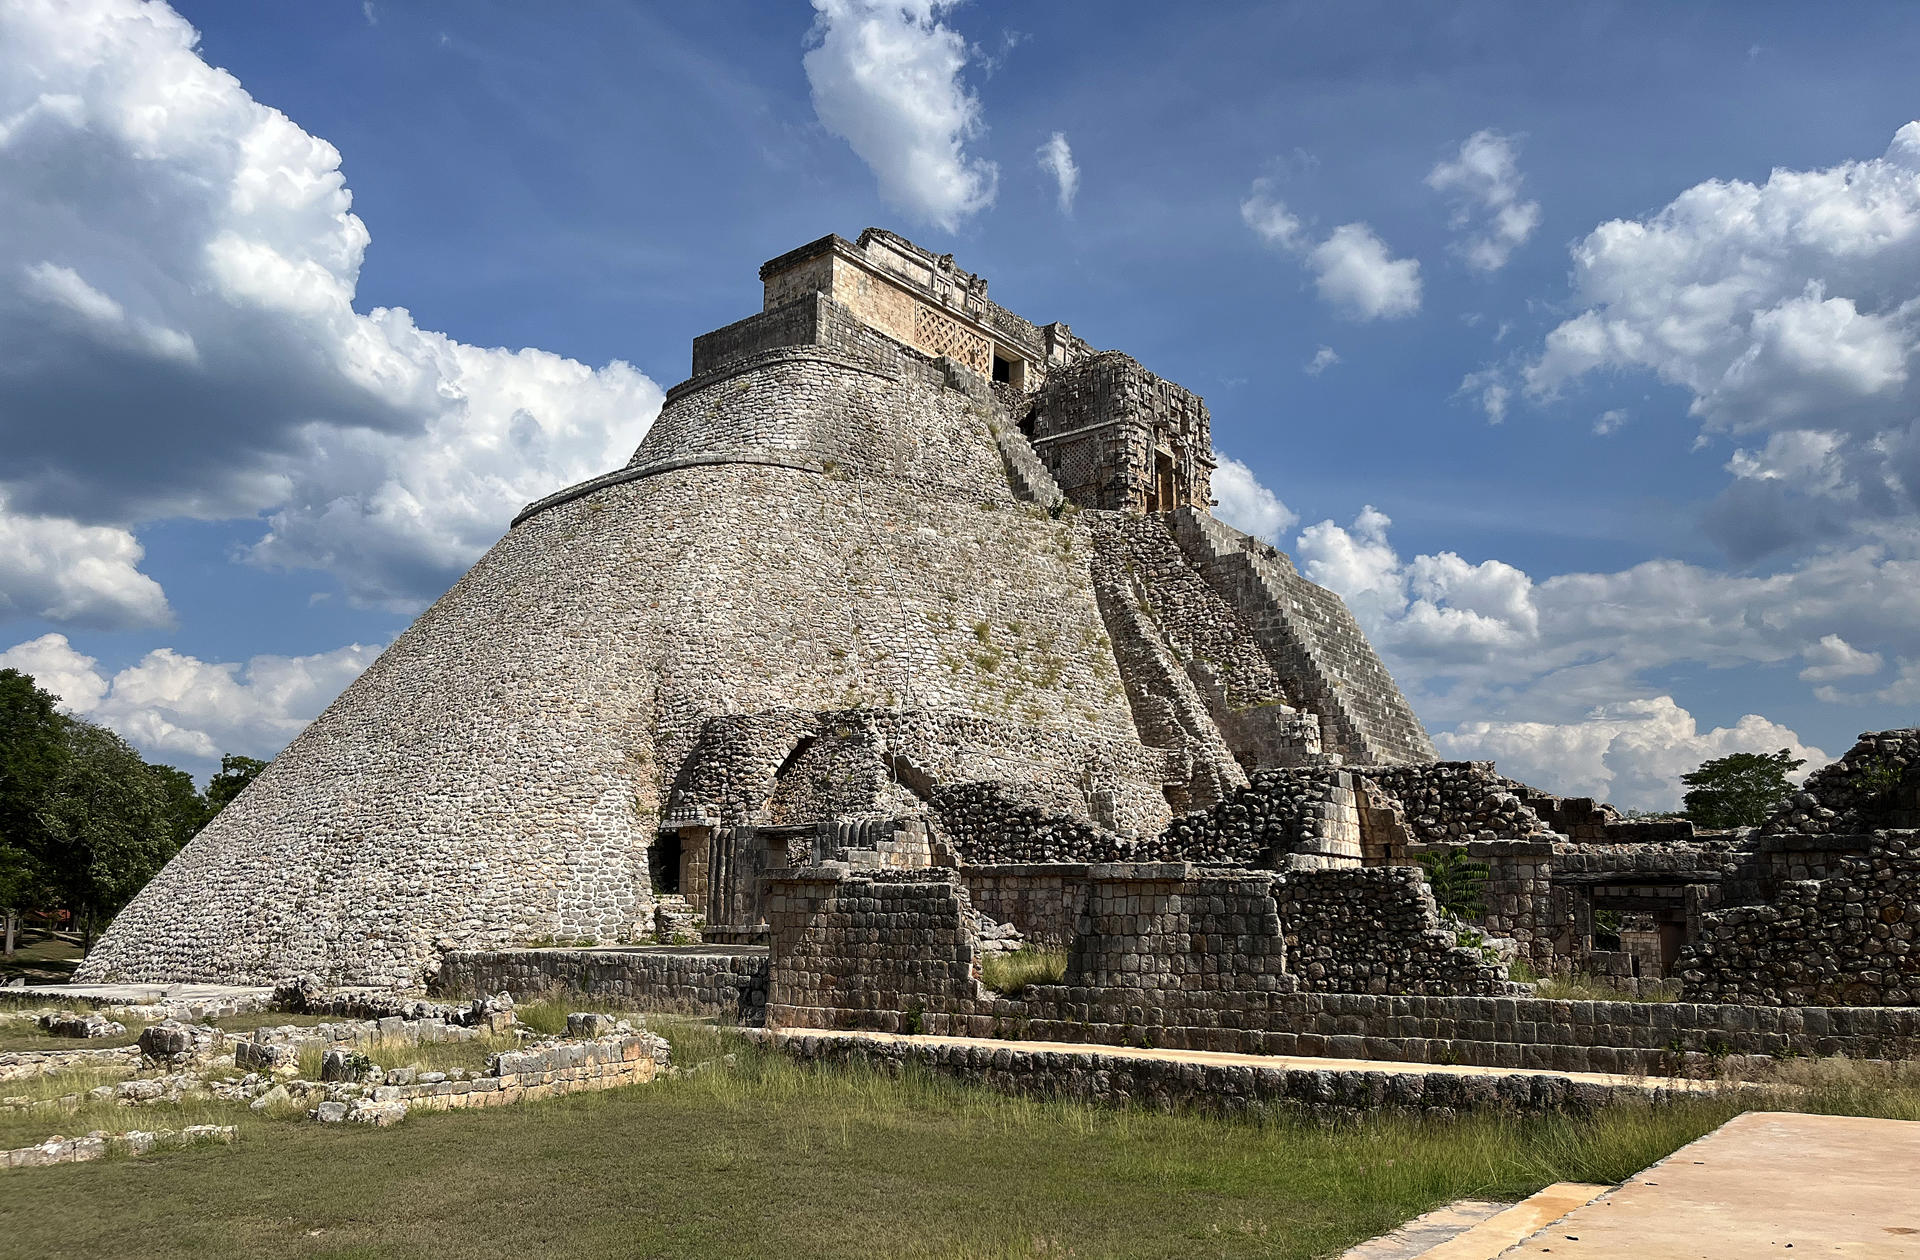 Uxmal, la ciudad prehispánica con filigrana de piedra, sigue desvelando misterios